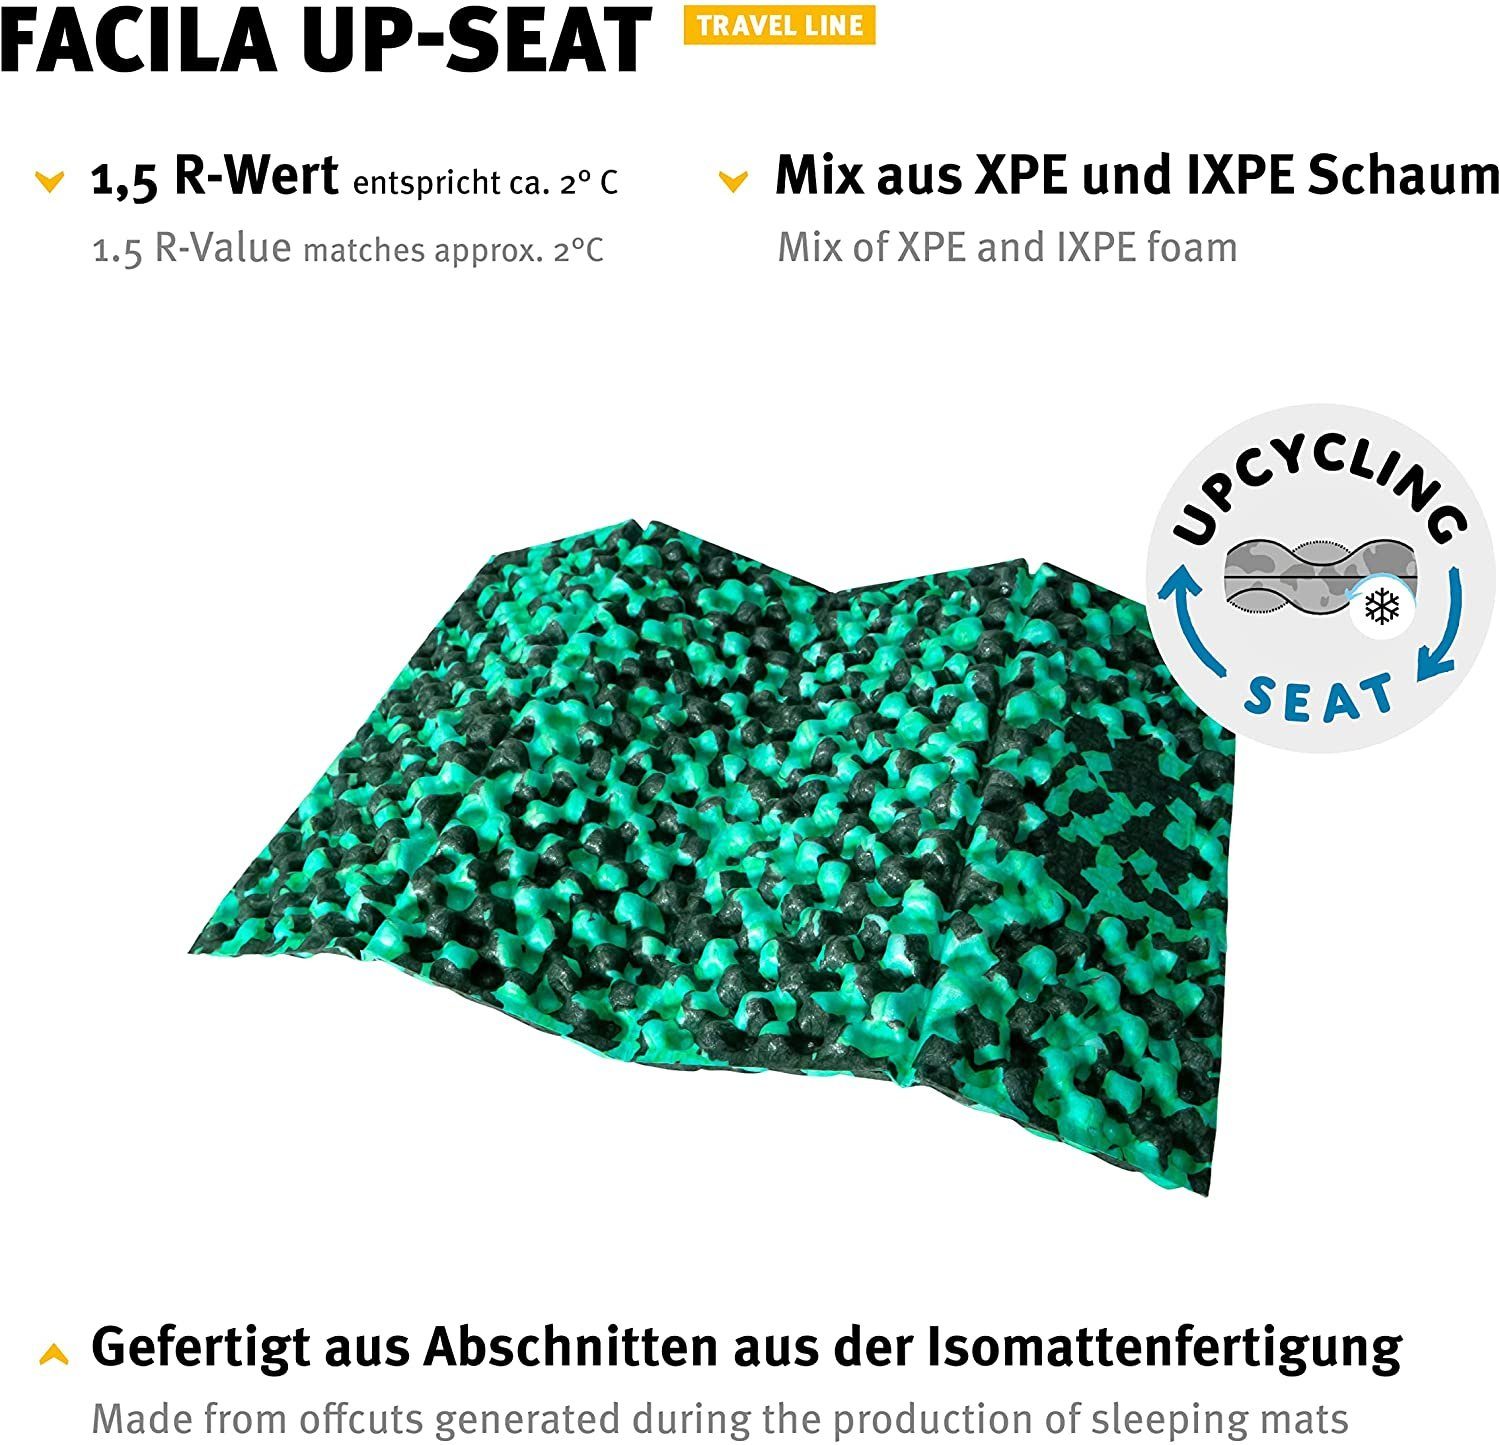 Wechsel Tents Thermositzkissen Faltbares Materialresten, Farbzusammenstellung zufällige Sitzkissen Outdoor Up-Seat, Facila recycelten aus